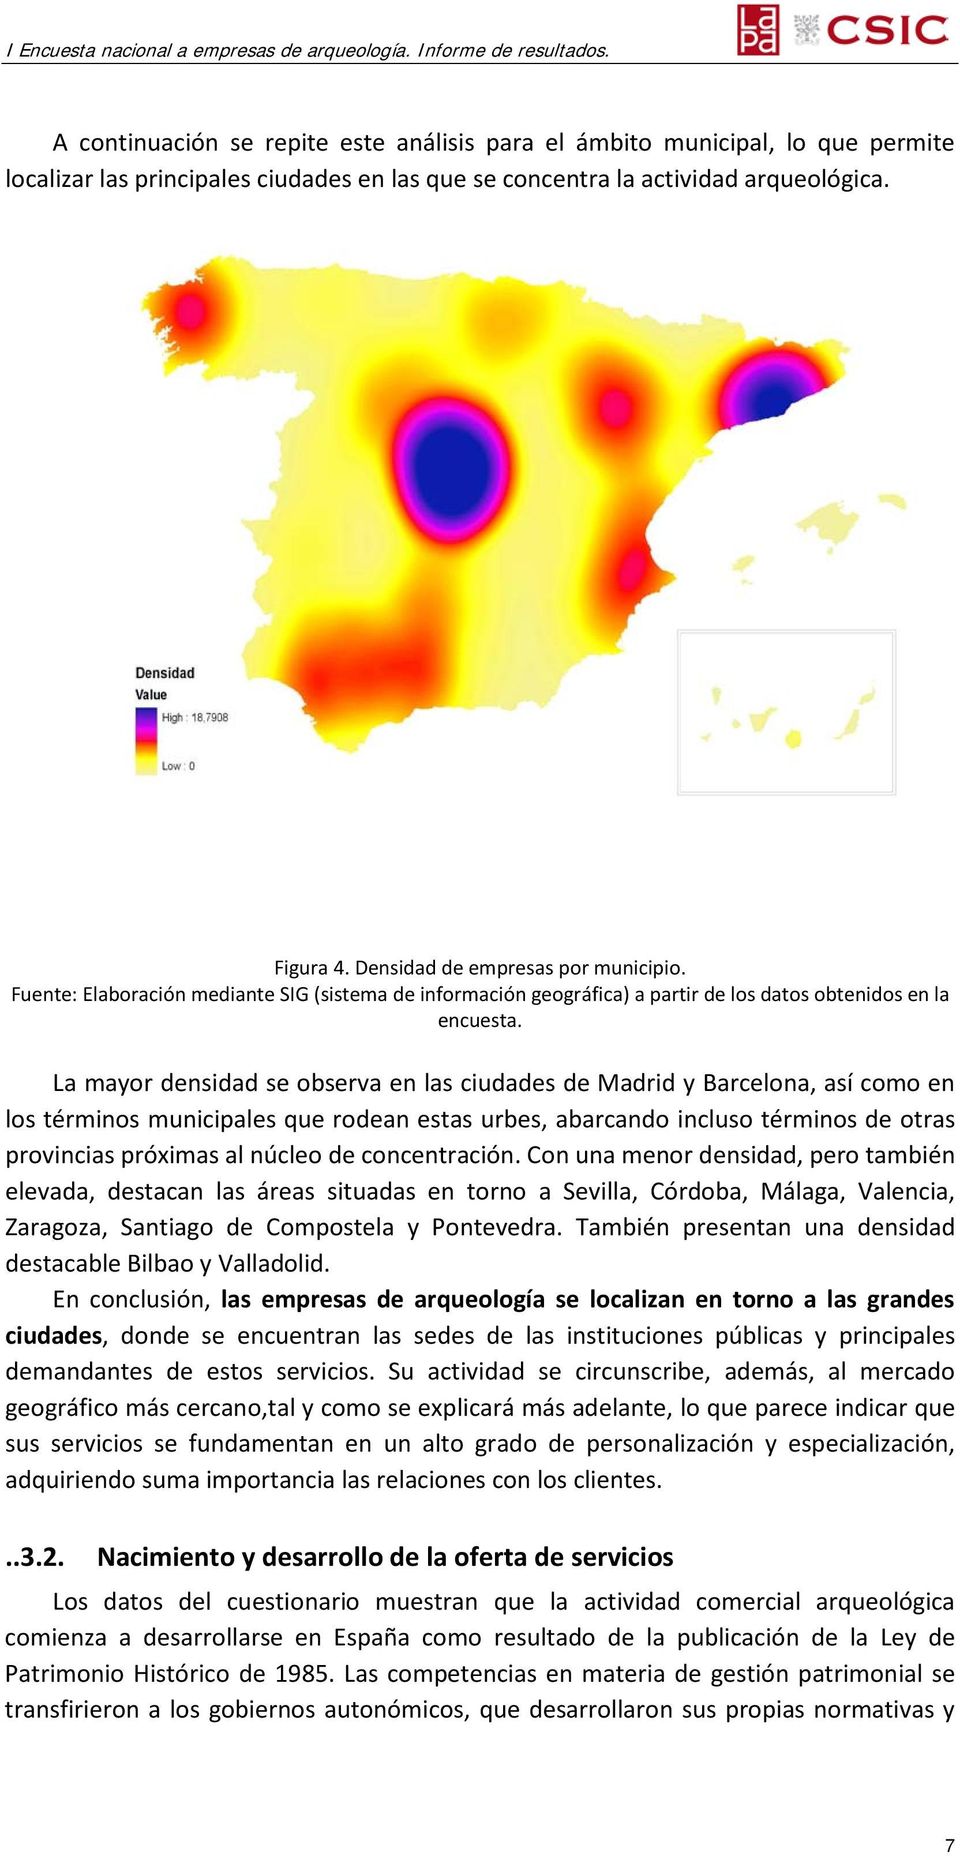 La mayor densidad se observa en las ciudades de Madrid y Barcelona, así como en los términos municipales que rodean estas urbes, abarcando incluso términos de otras provincias próximas al núcleo de